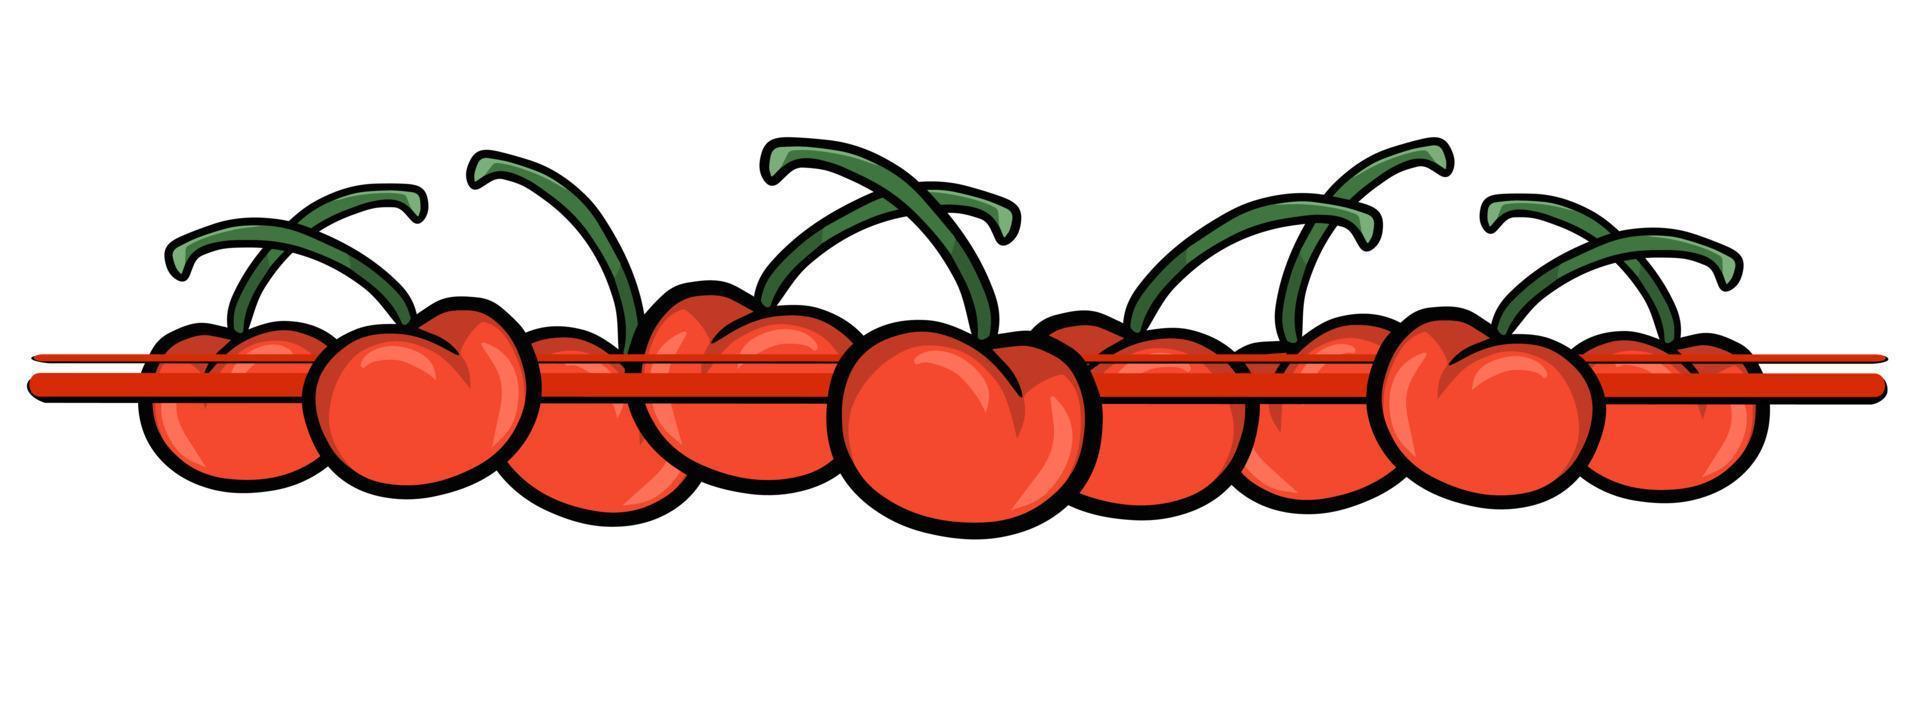 horizontaler Rand, rote Kirschbeeren mit Zweigen, Vektorillustration im Cartoon-Stil auf weißem Hintergrund vektor